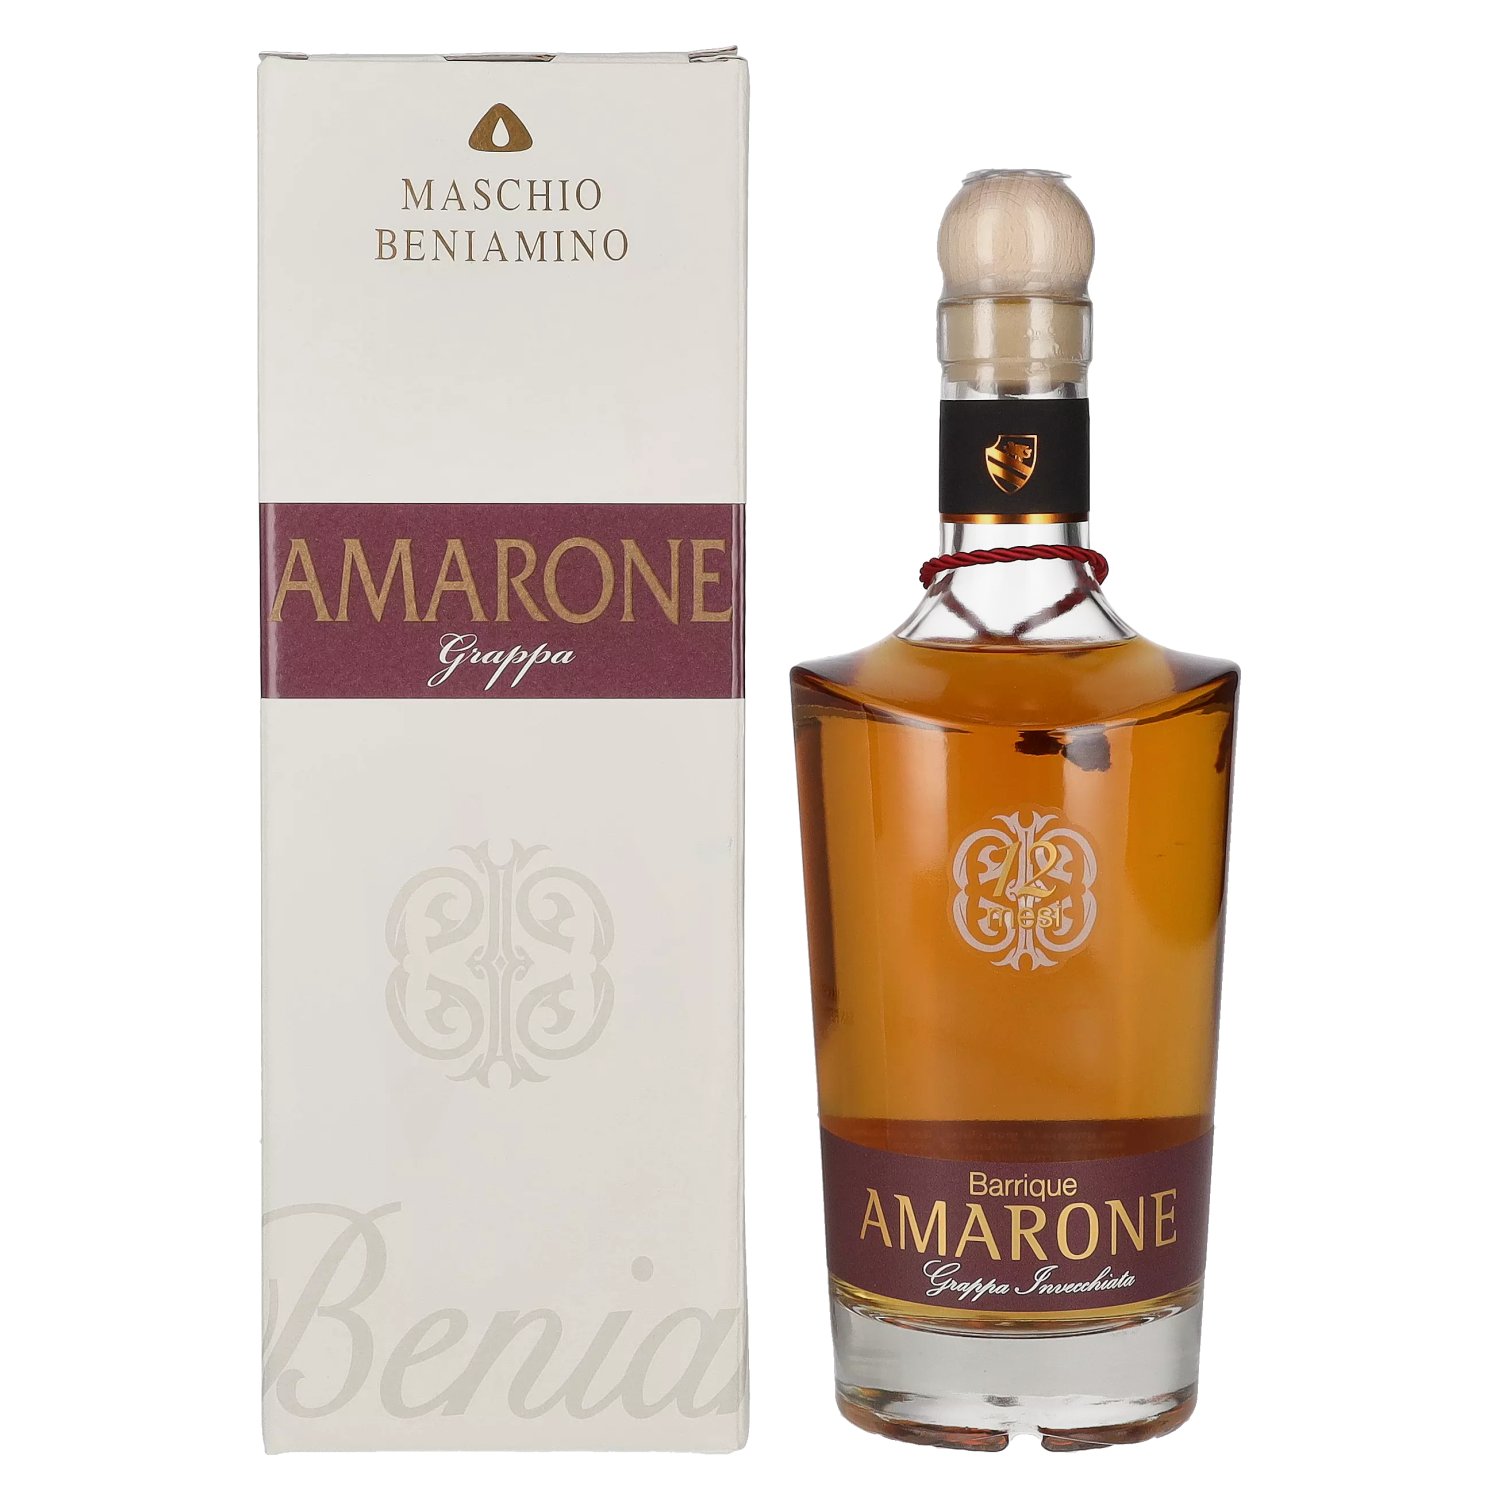 AMARONE Barrique Mesi 12 Grappa Maschio in Beniamino 0,7l 40% in Giftbox Invecchiata Vol.